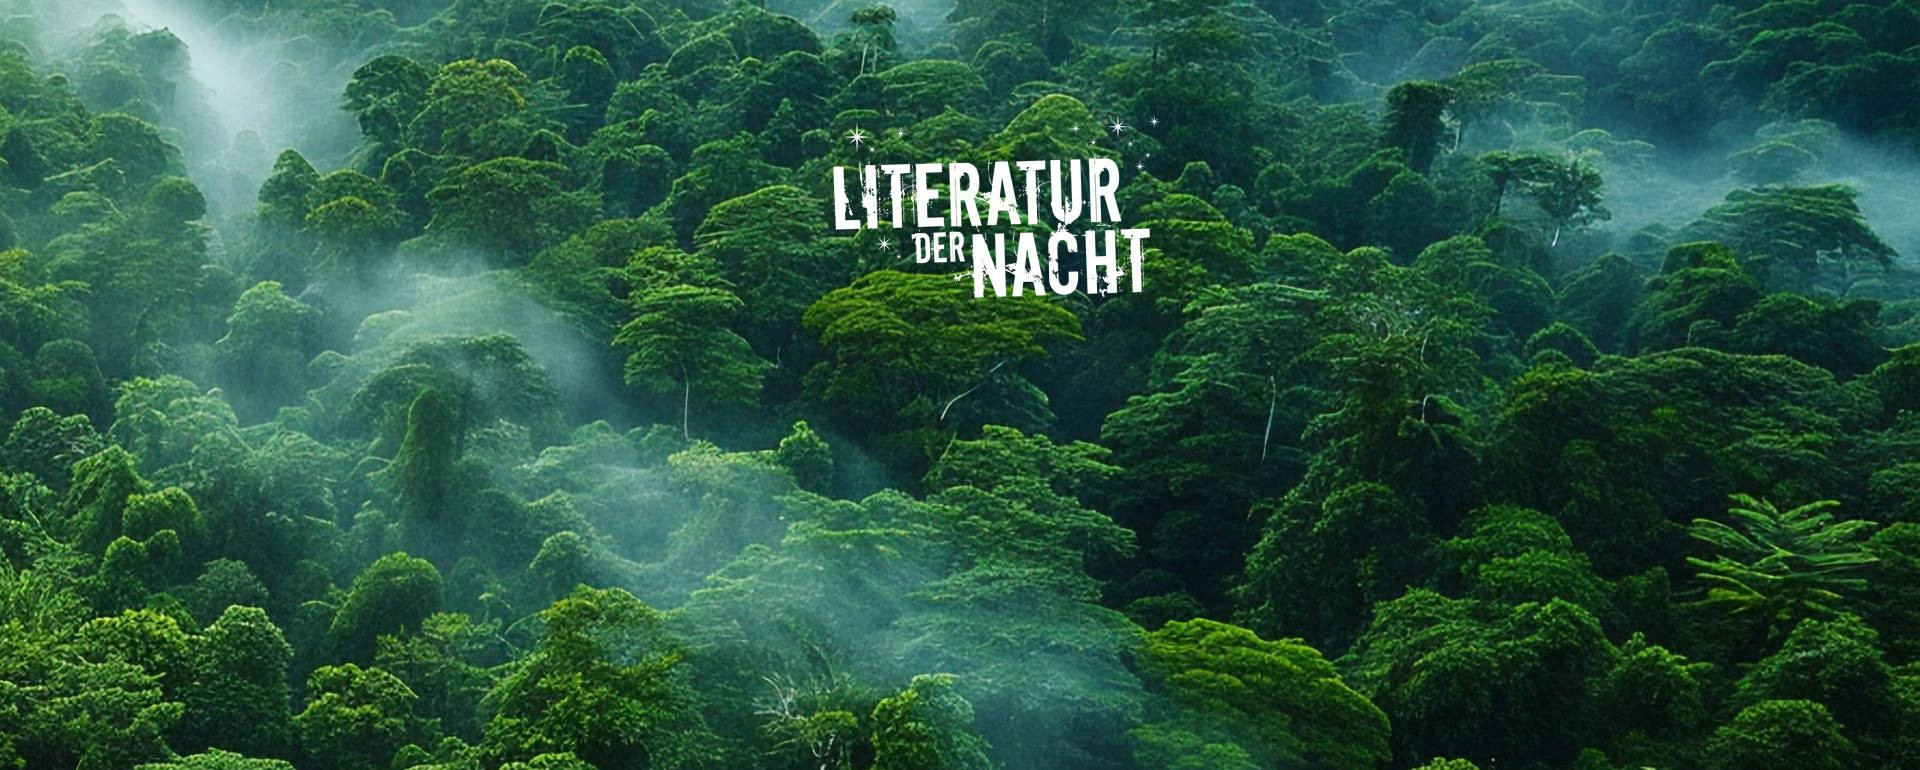 Die Kinostimme von Daniel Radcliffe liest Yossi Ghinsberg: Dem Dschungel entkommen